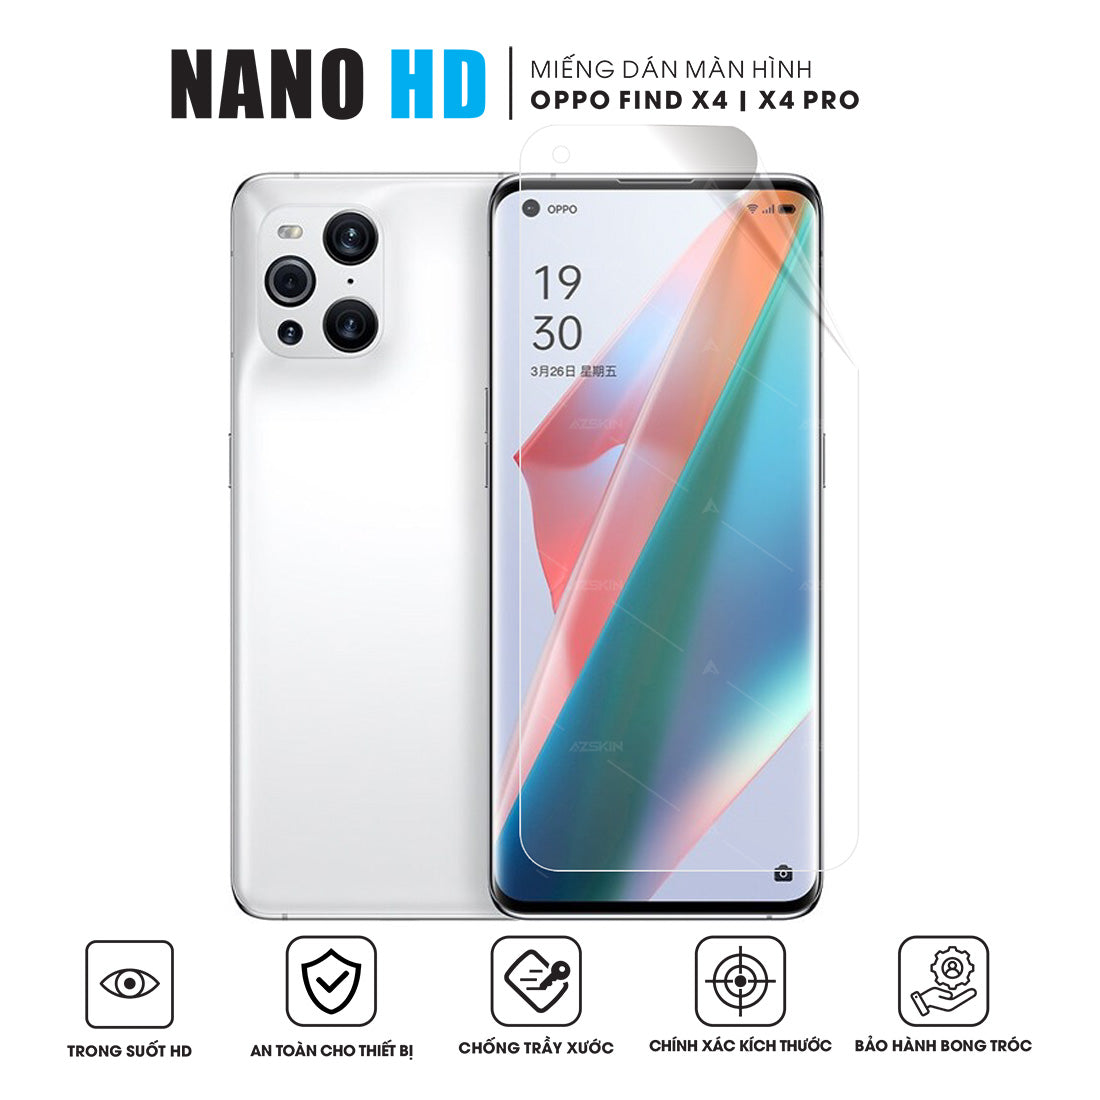 Miếng dán màn hình Nano HD OPPO Find X4 | X4 Pro